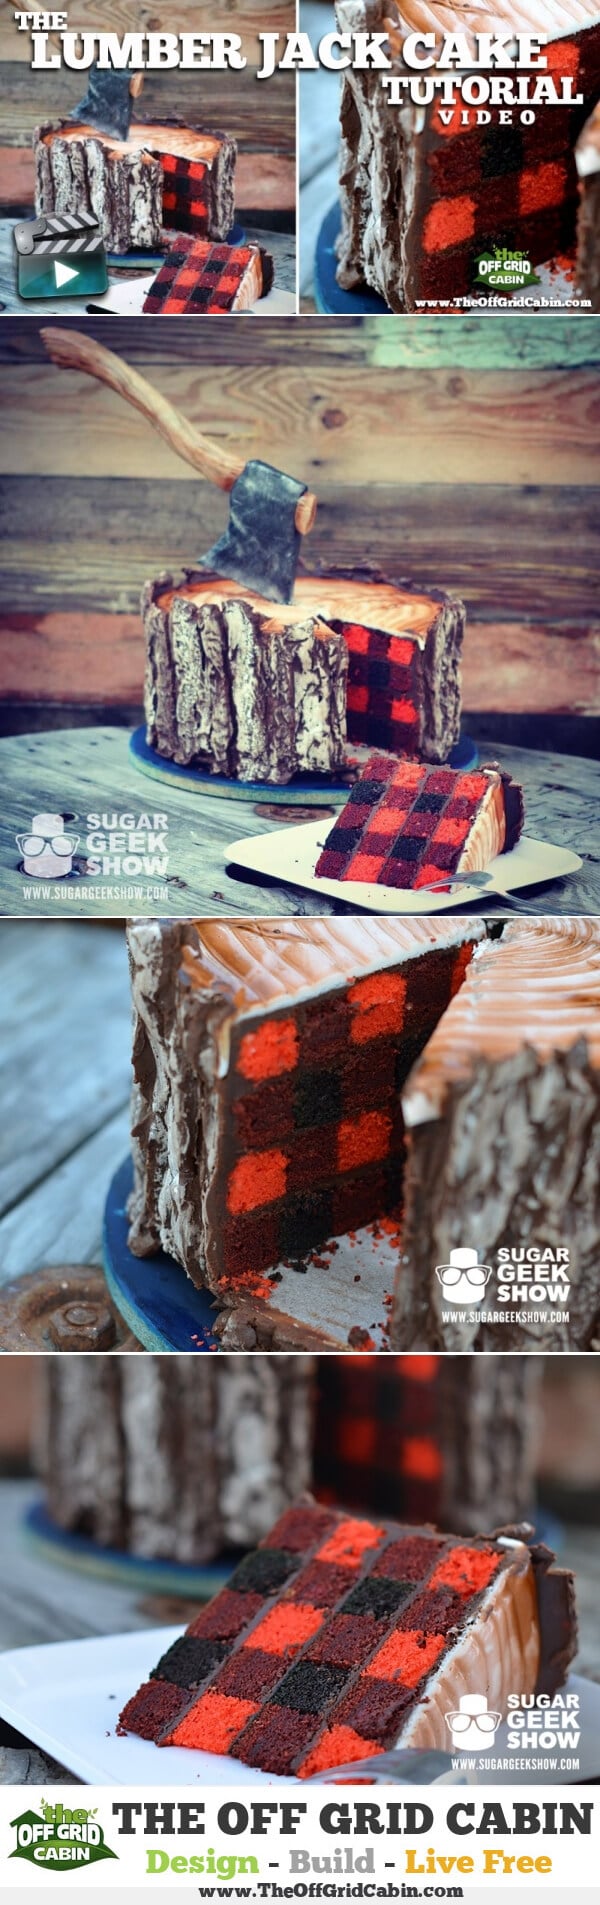 How To Make A LumberJack Cake Tutorial